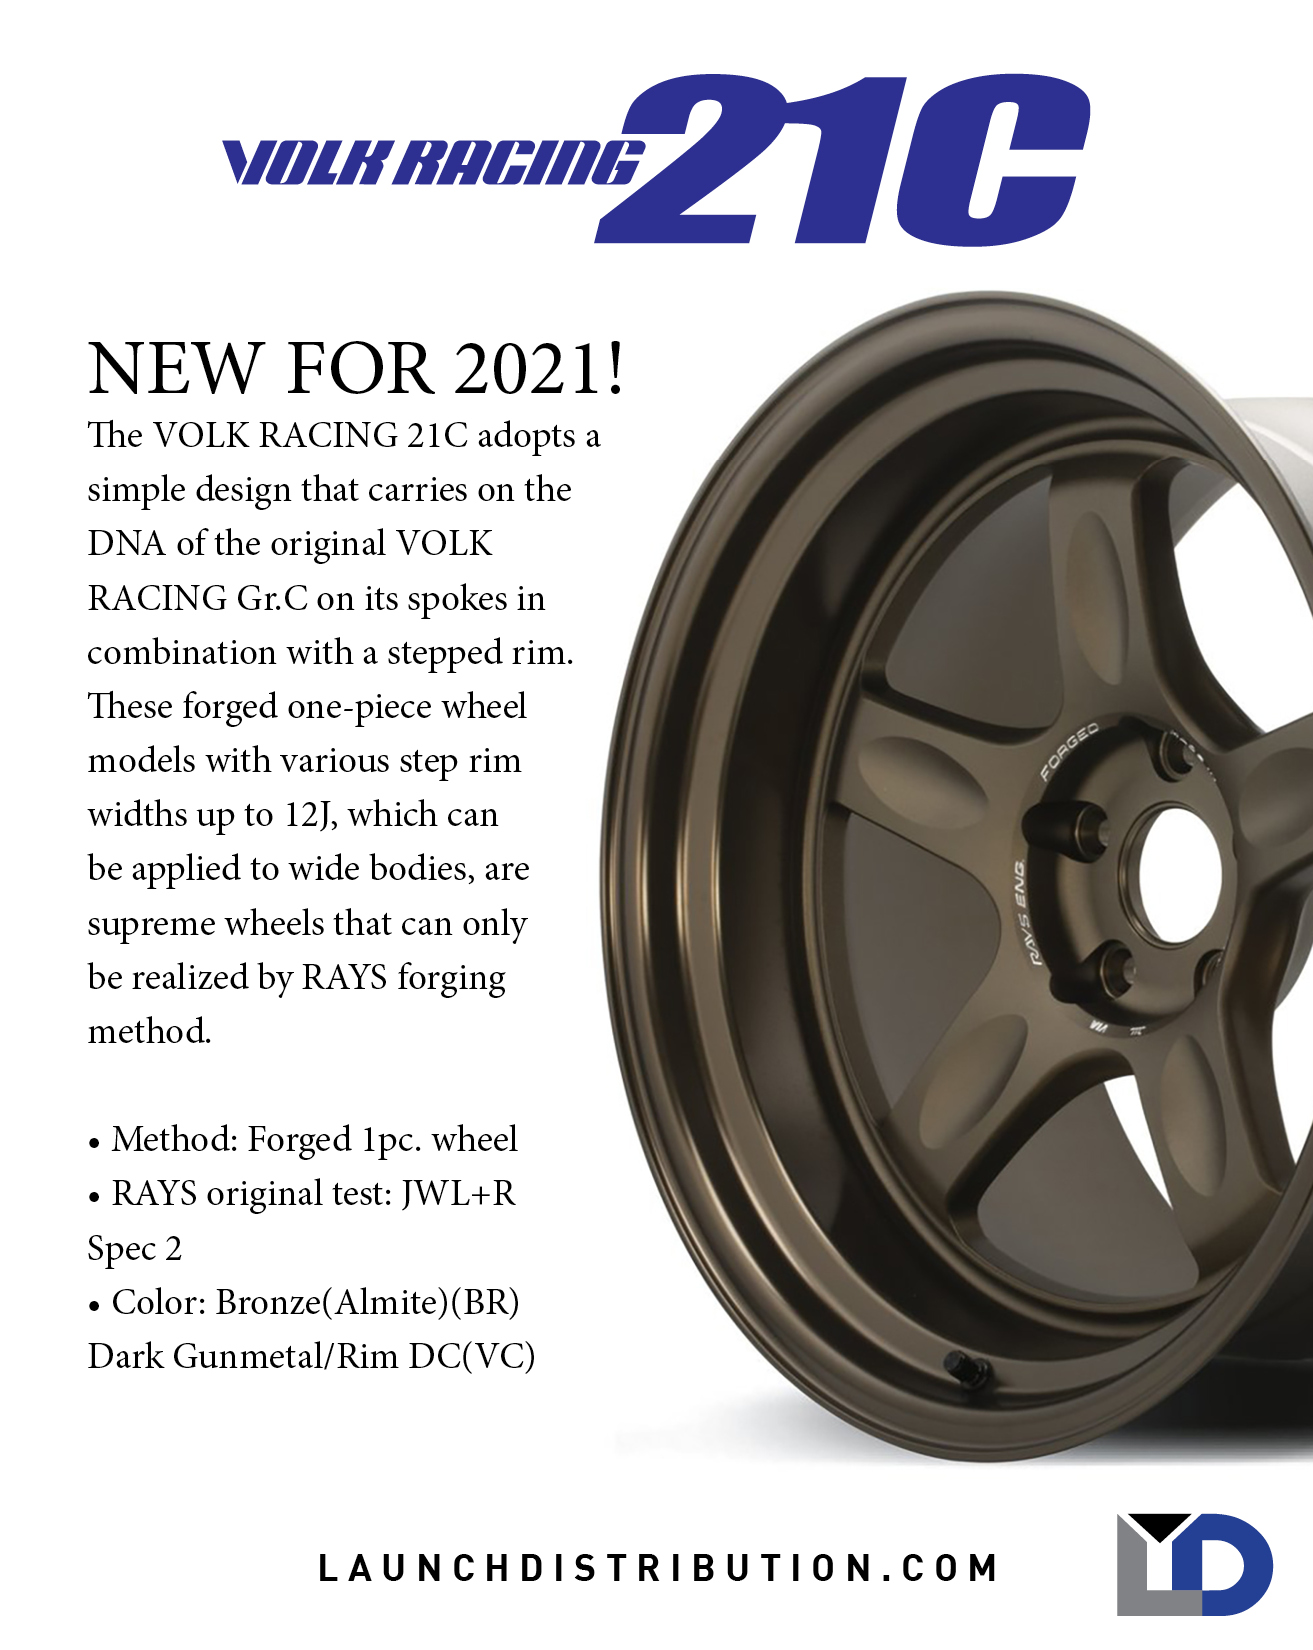 New for 2021! Volk Racing 21C!